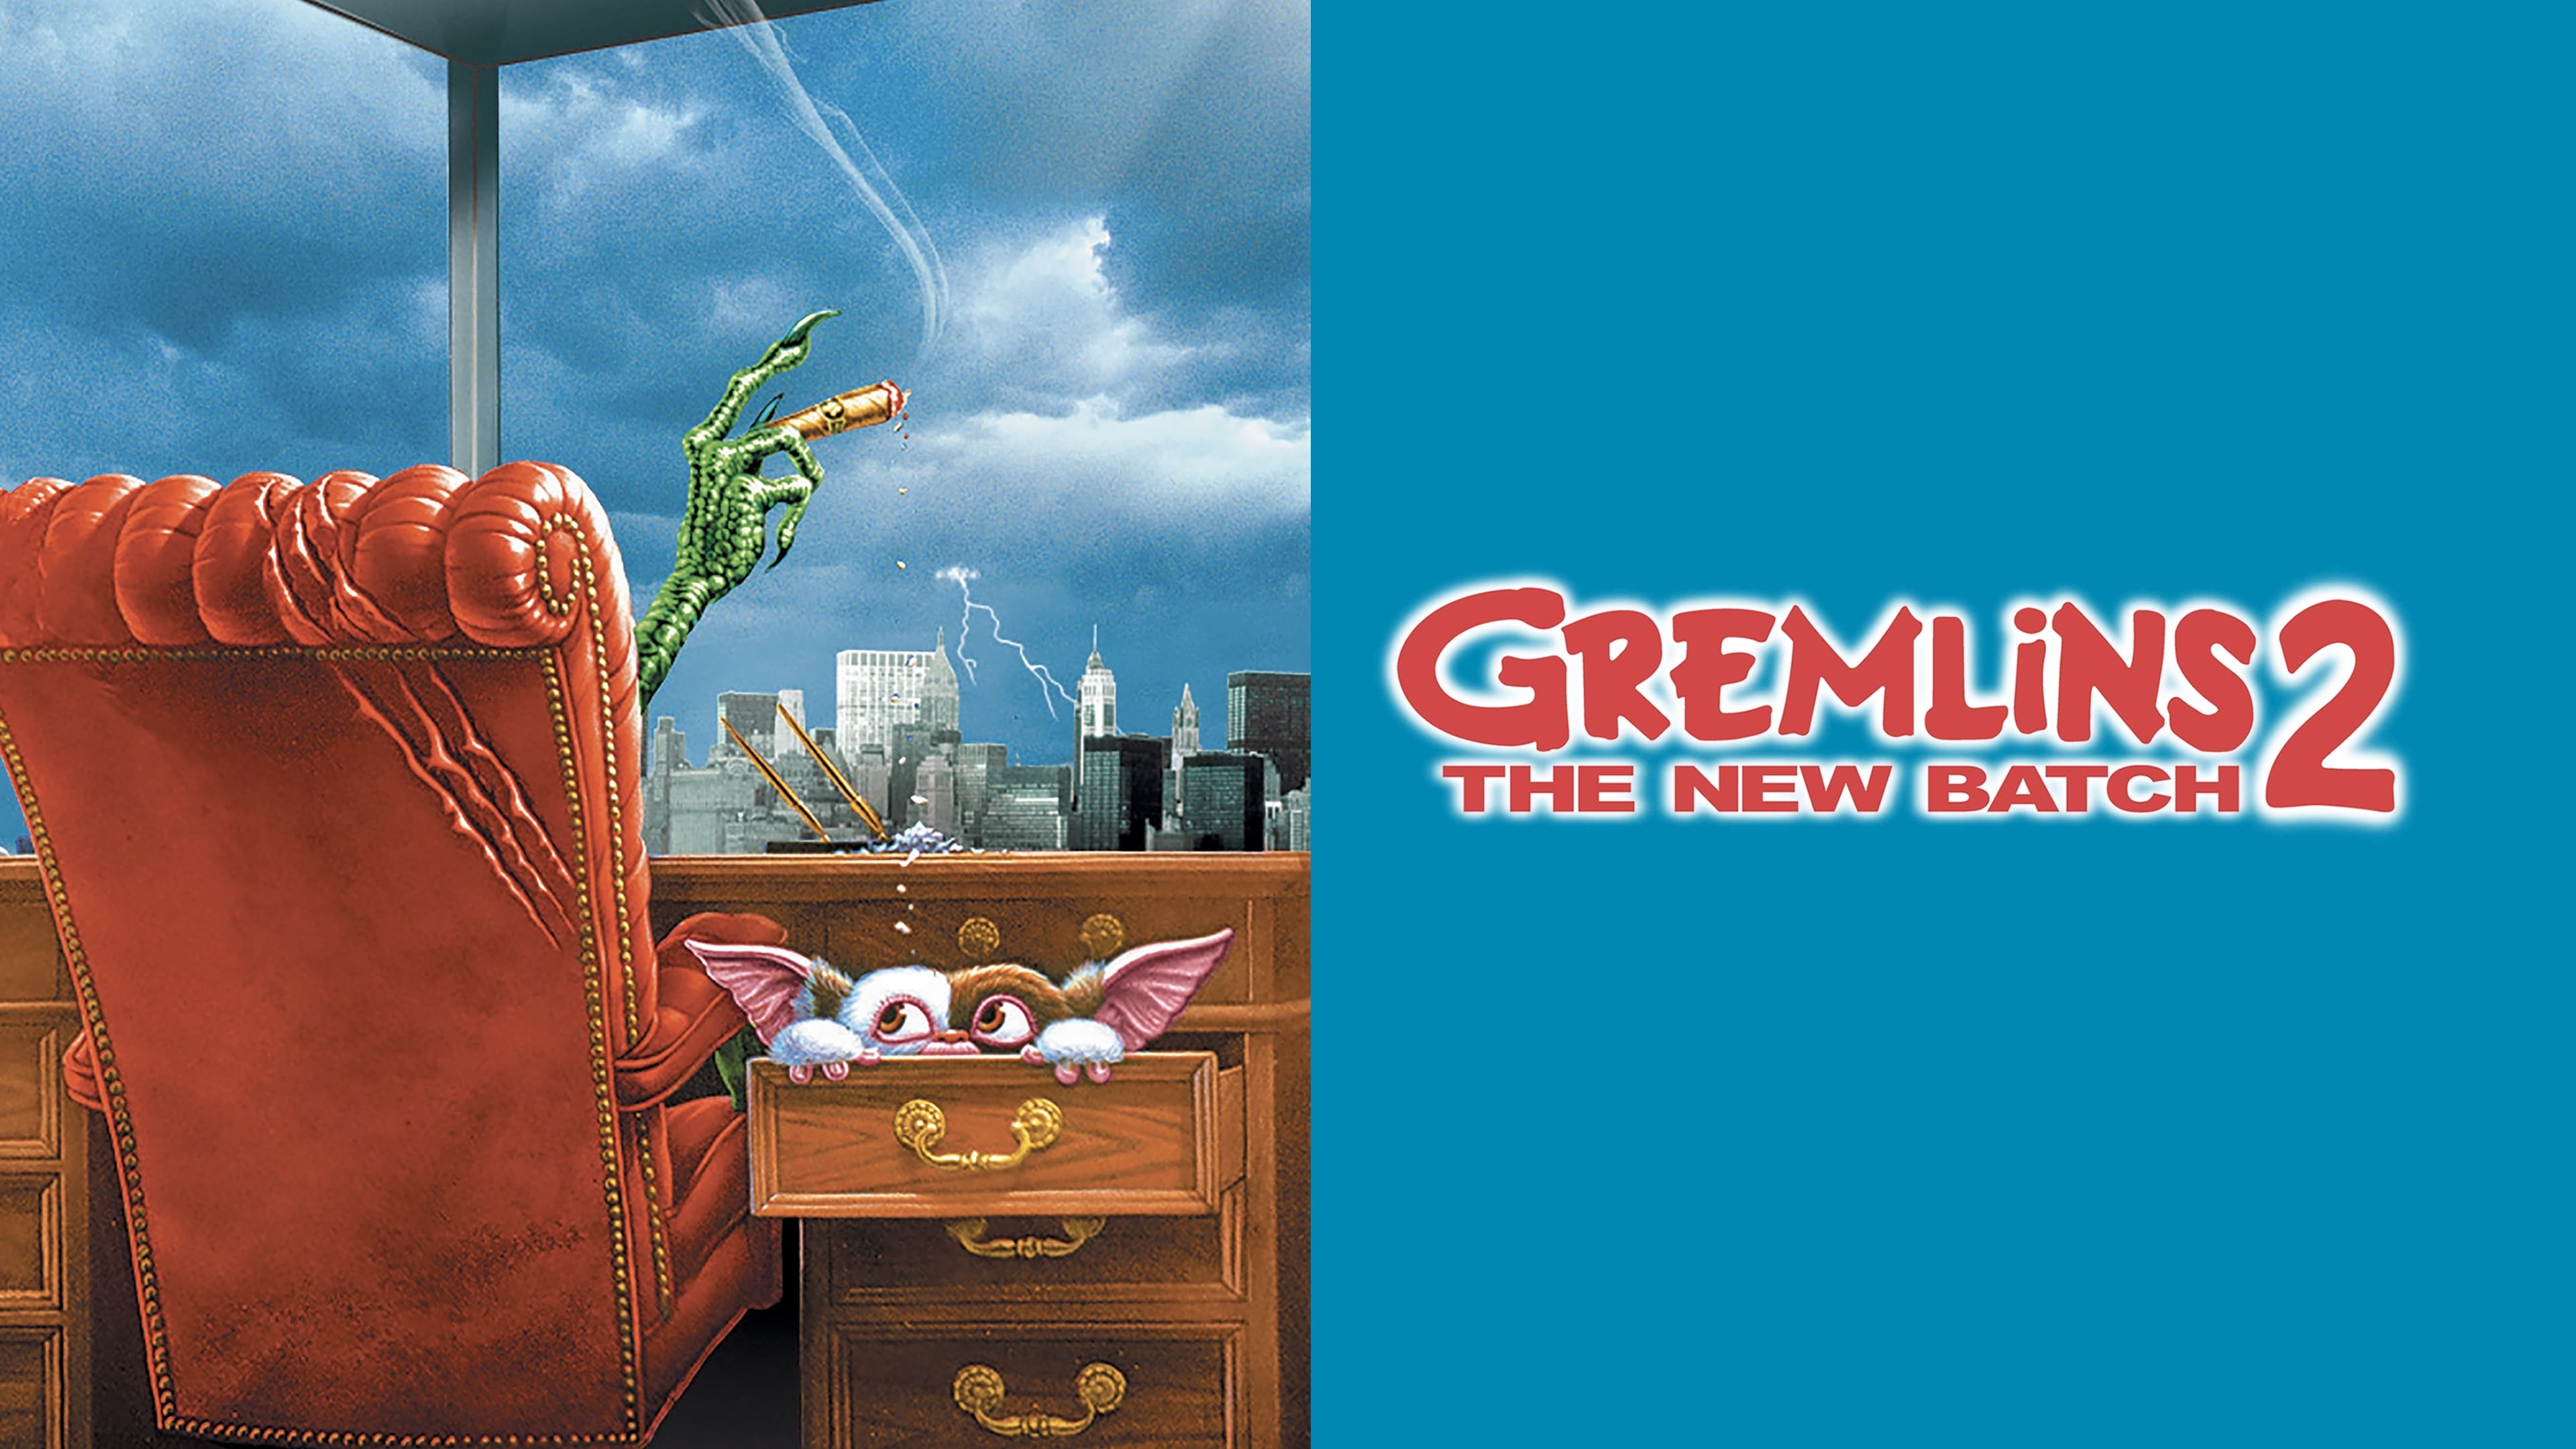 Gremlins 2: A Nova Geração